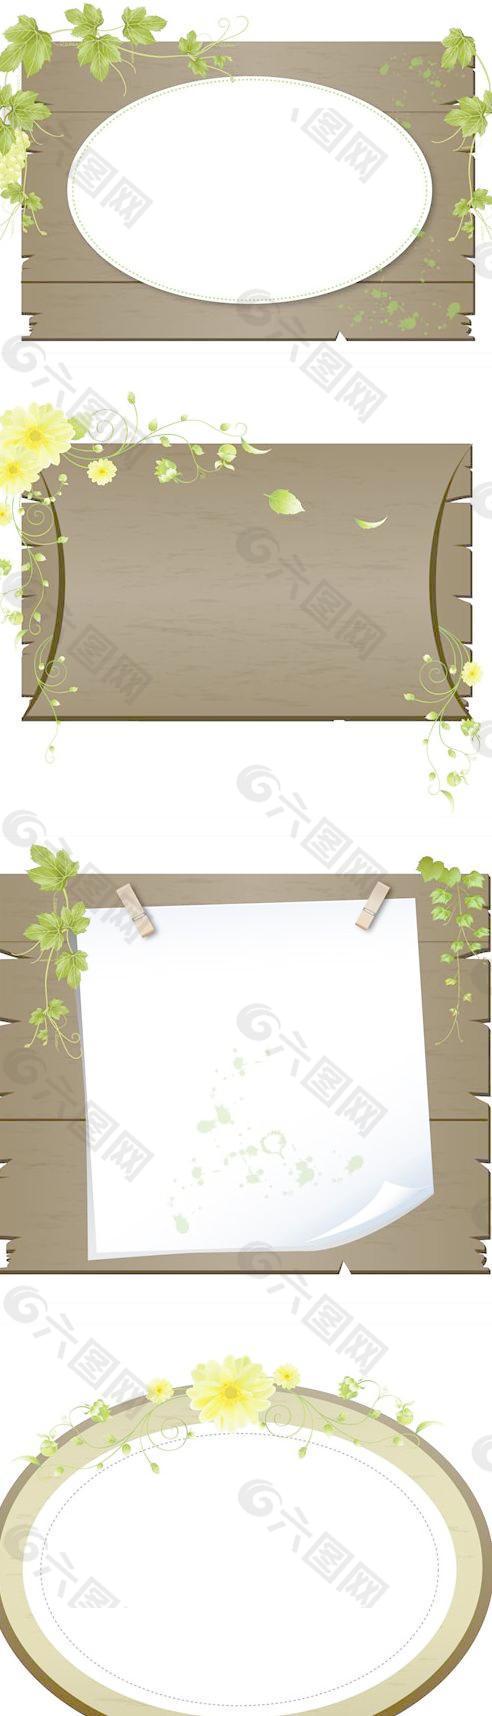 木板蔓藤边框矢量素材